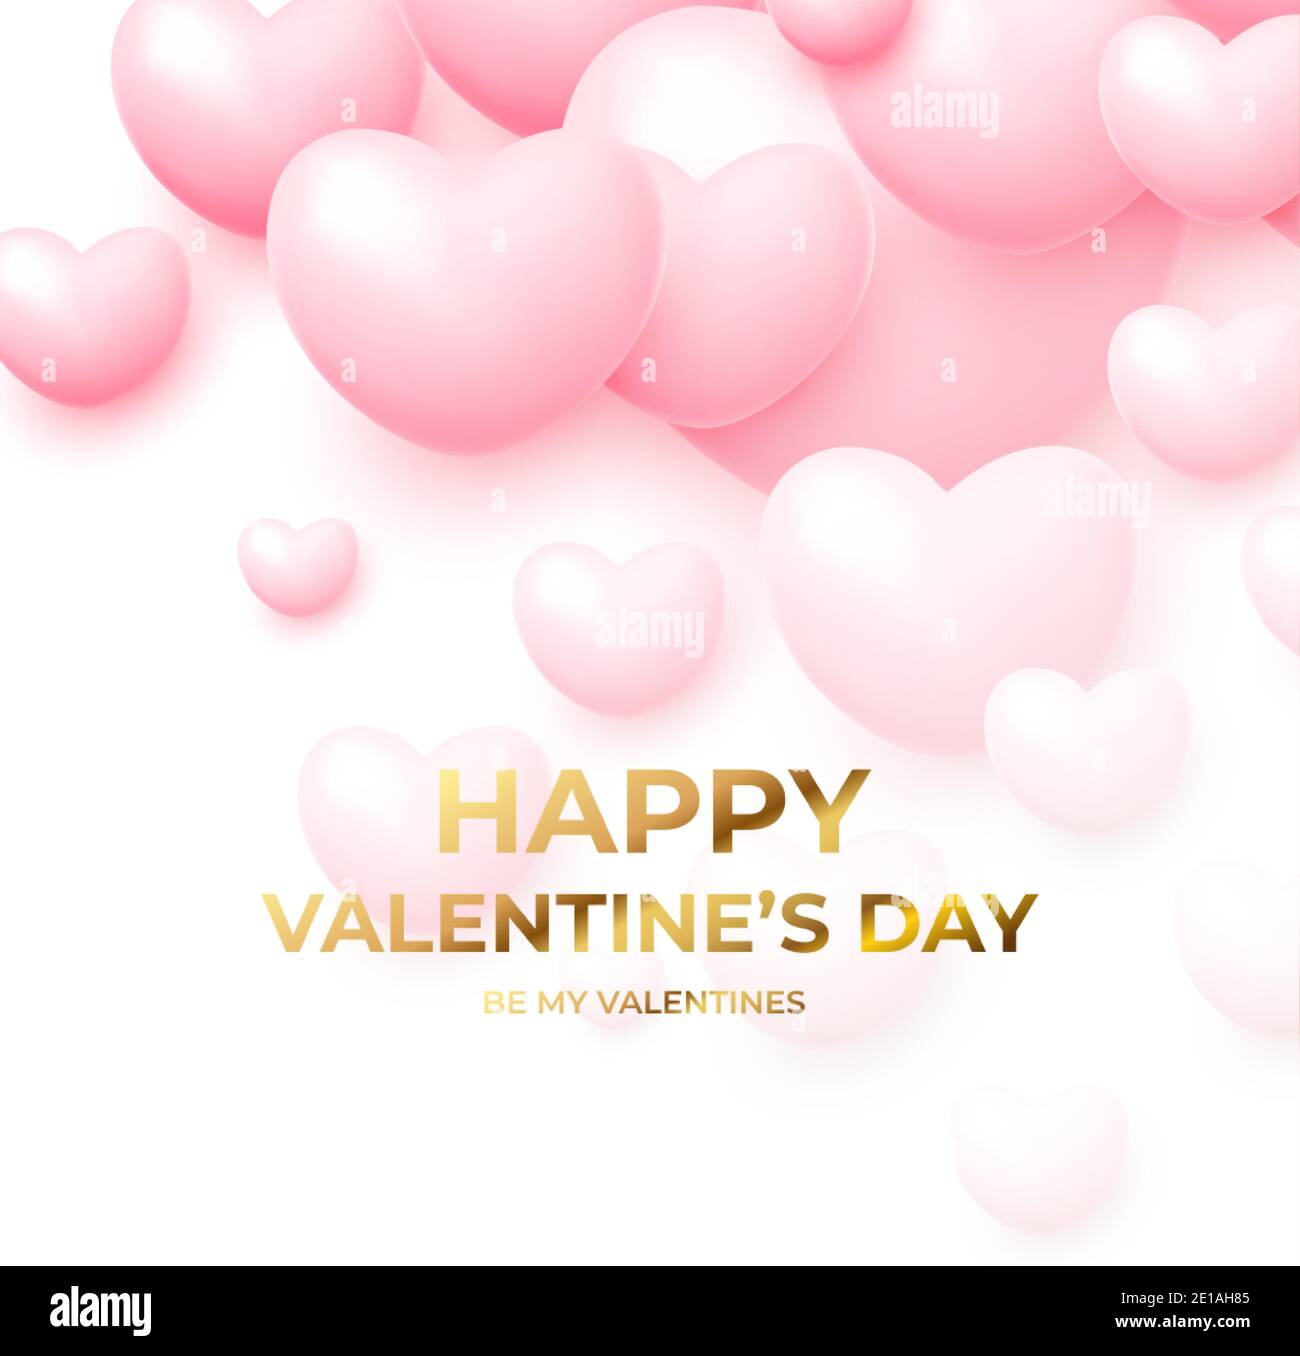 Concept design per poster di San Valentino con palloncini volanti rosa e bianco con scritta dorata Happy San Valentino. Illustrazione vettoriale Illustrazione Vettoriale